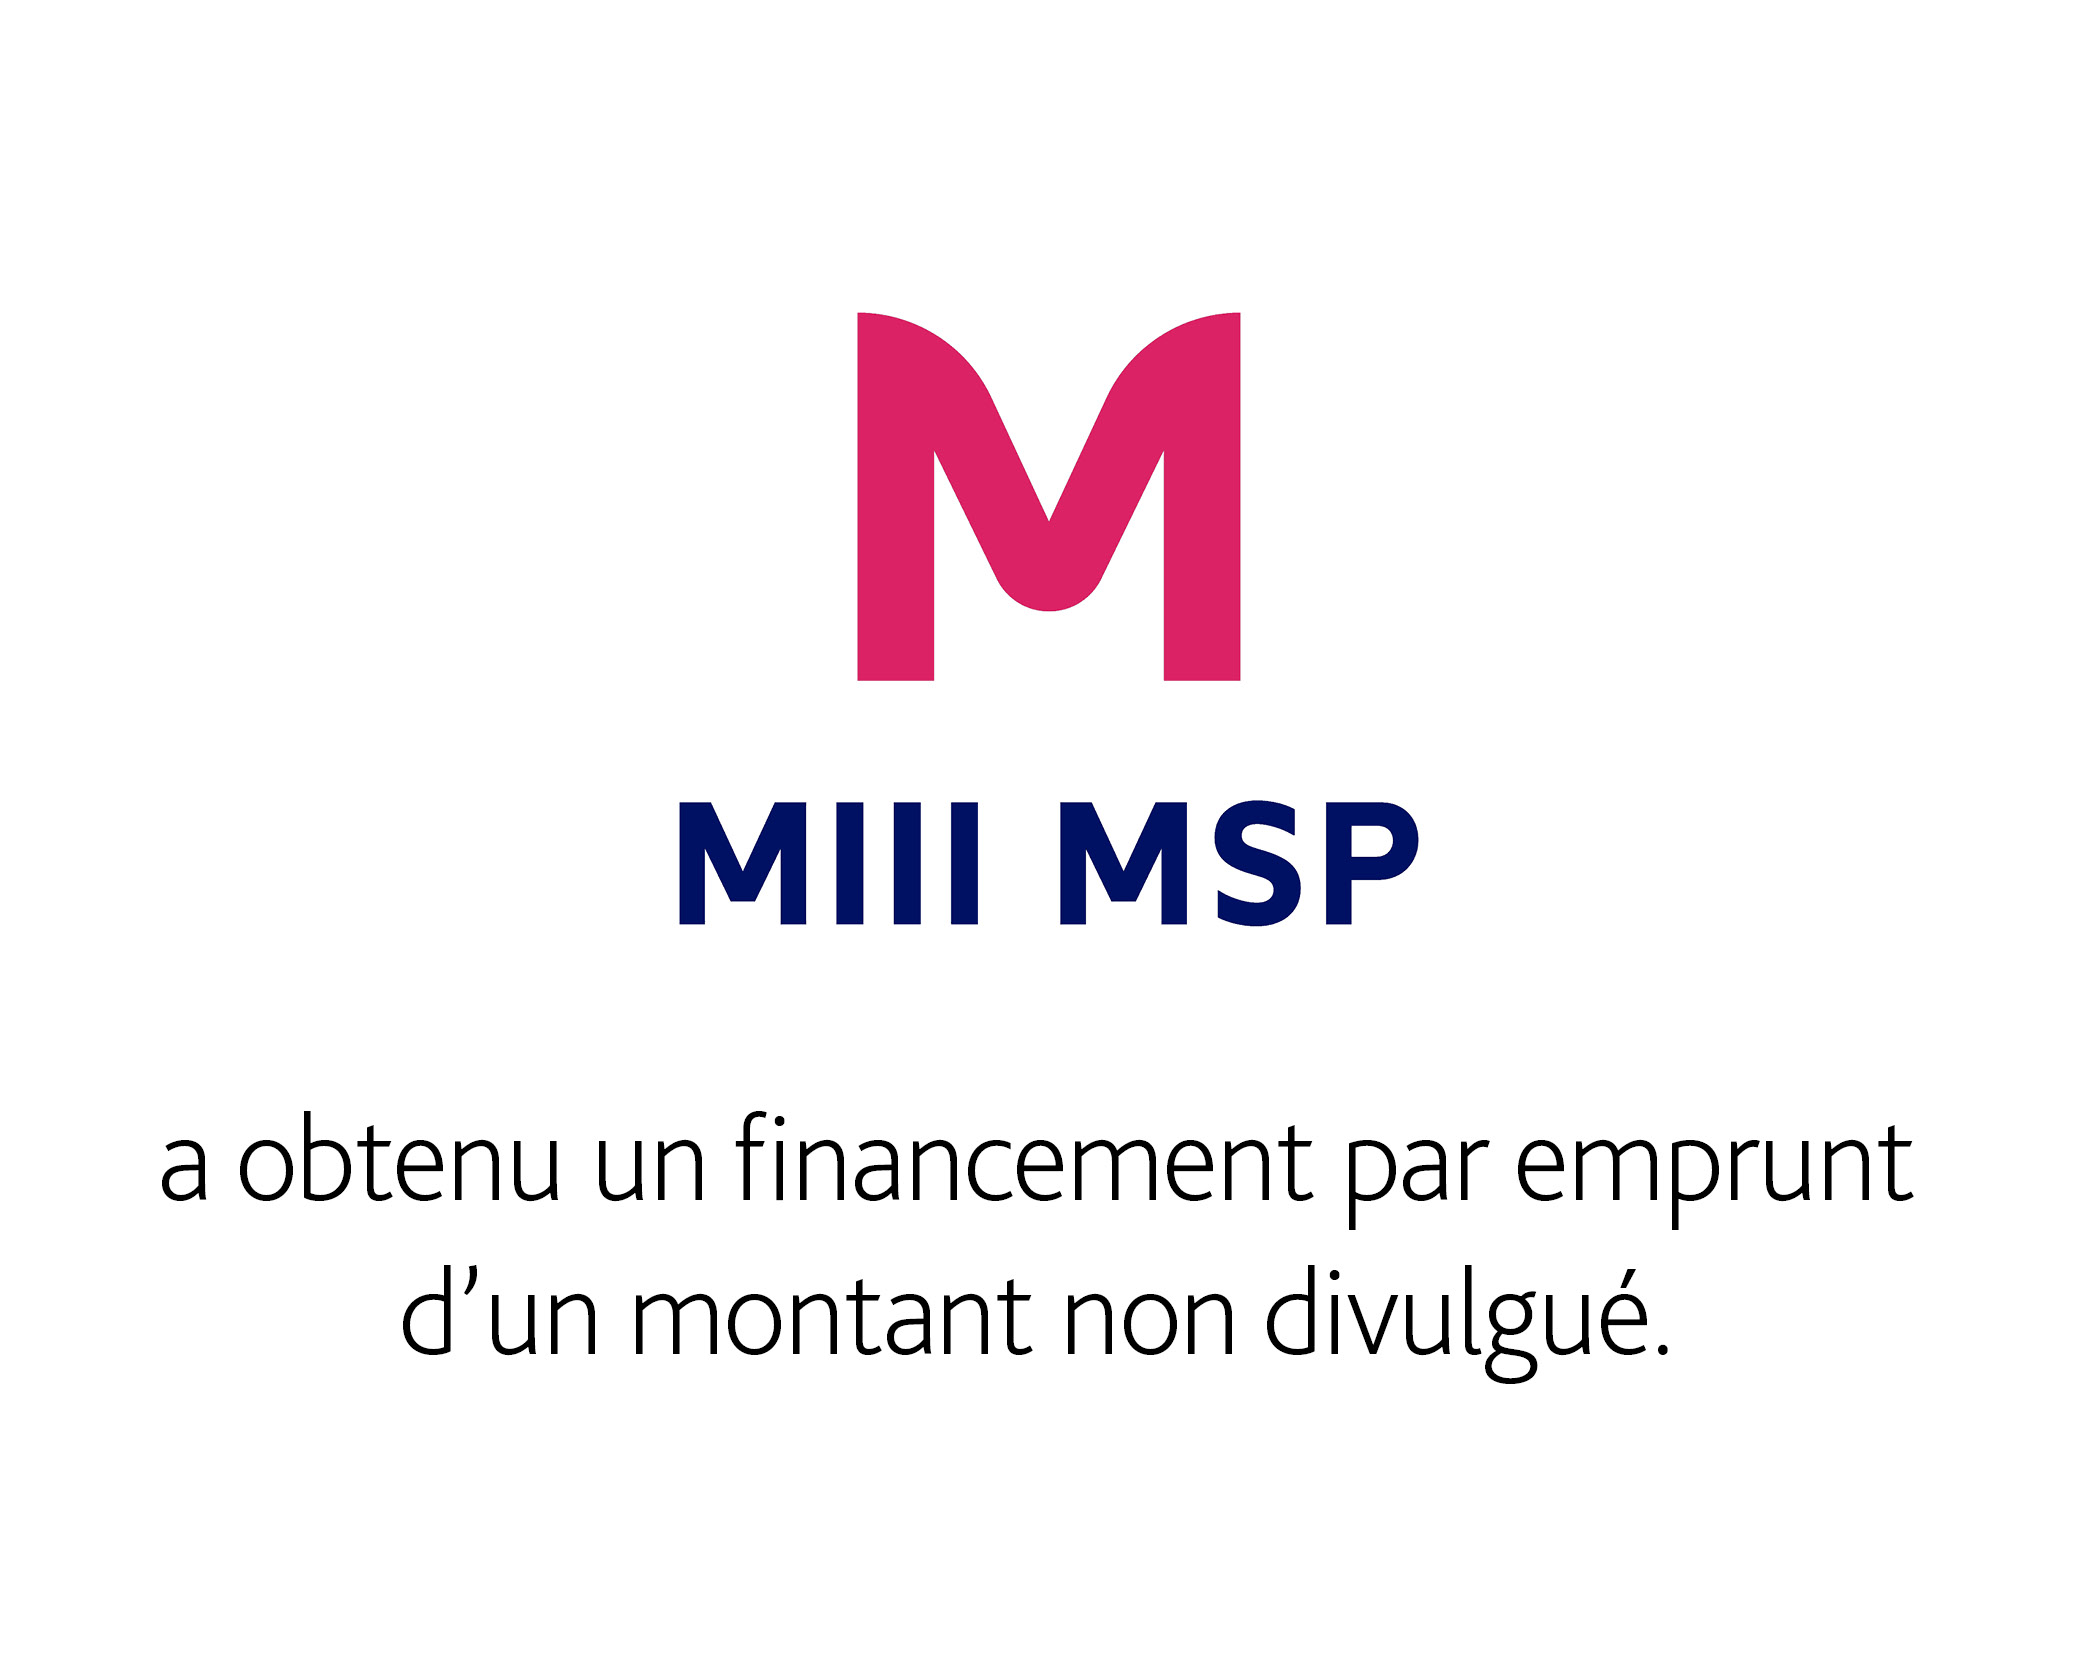 Logo de Mill MSP Triella avec un texte en dessous qui dit : "a levé un financement par emprunt de 4 250 000 $".